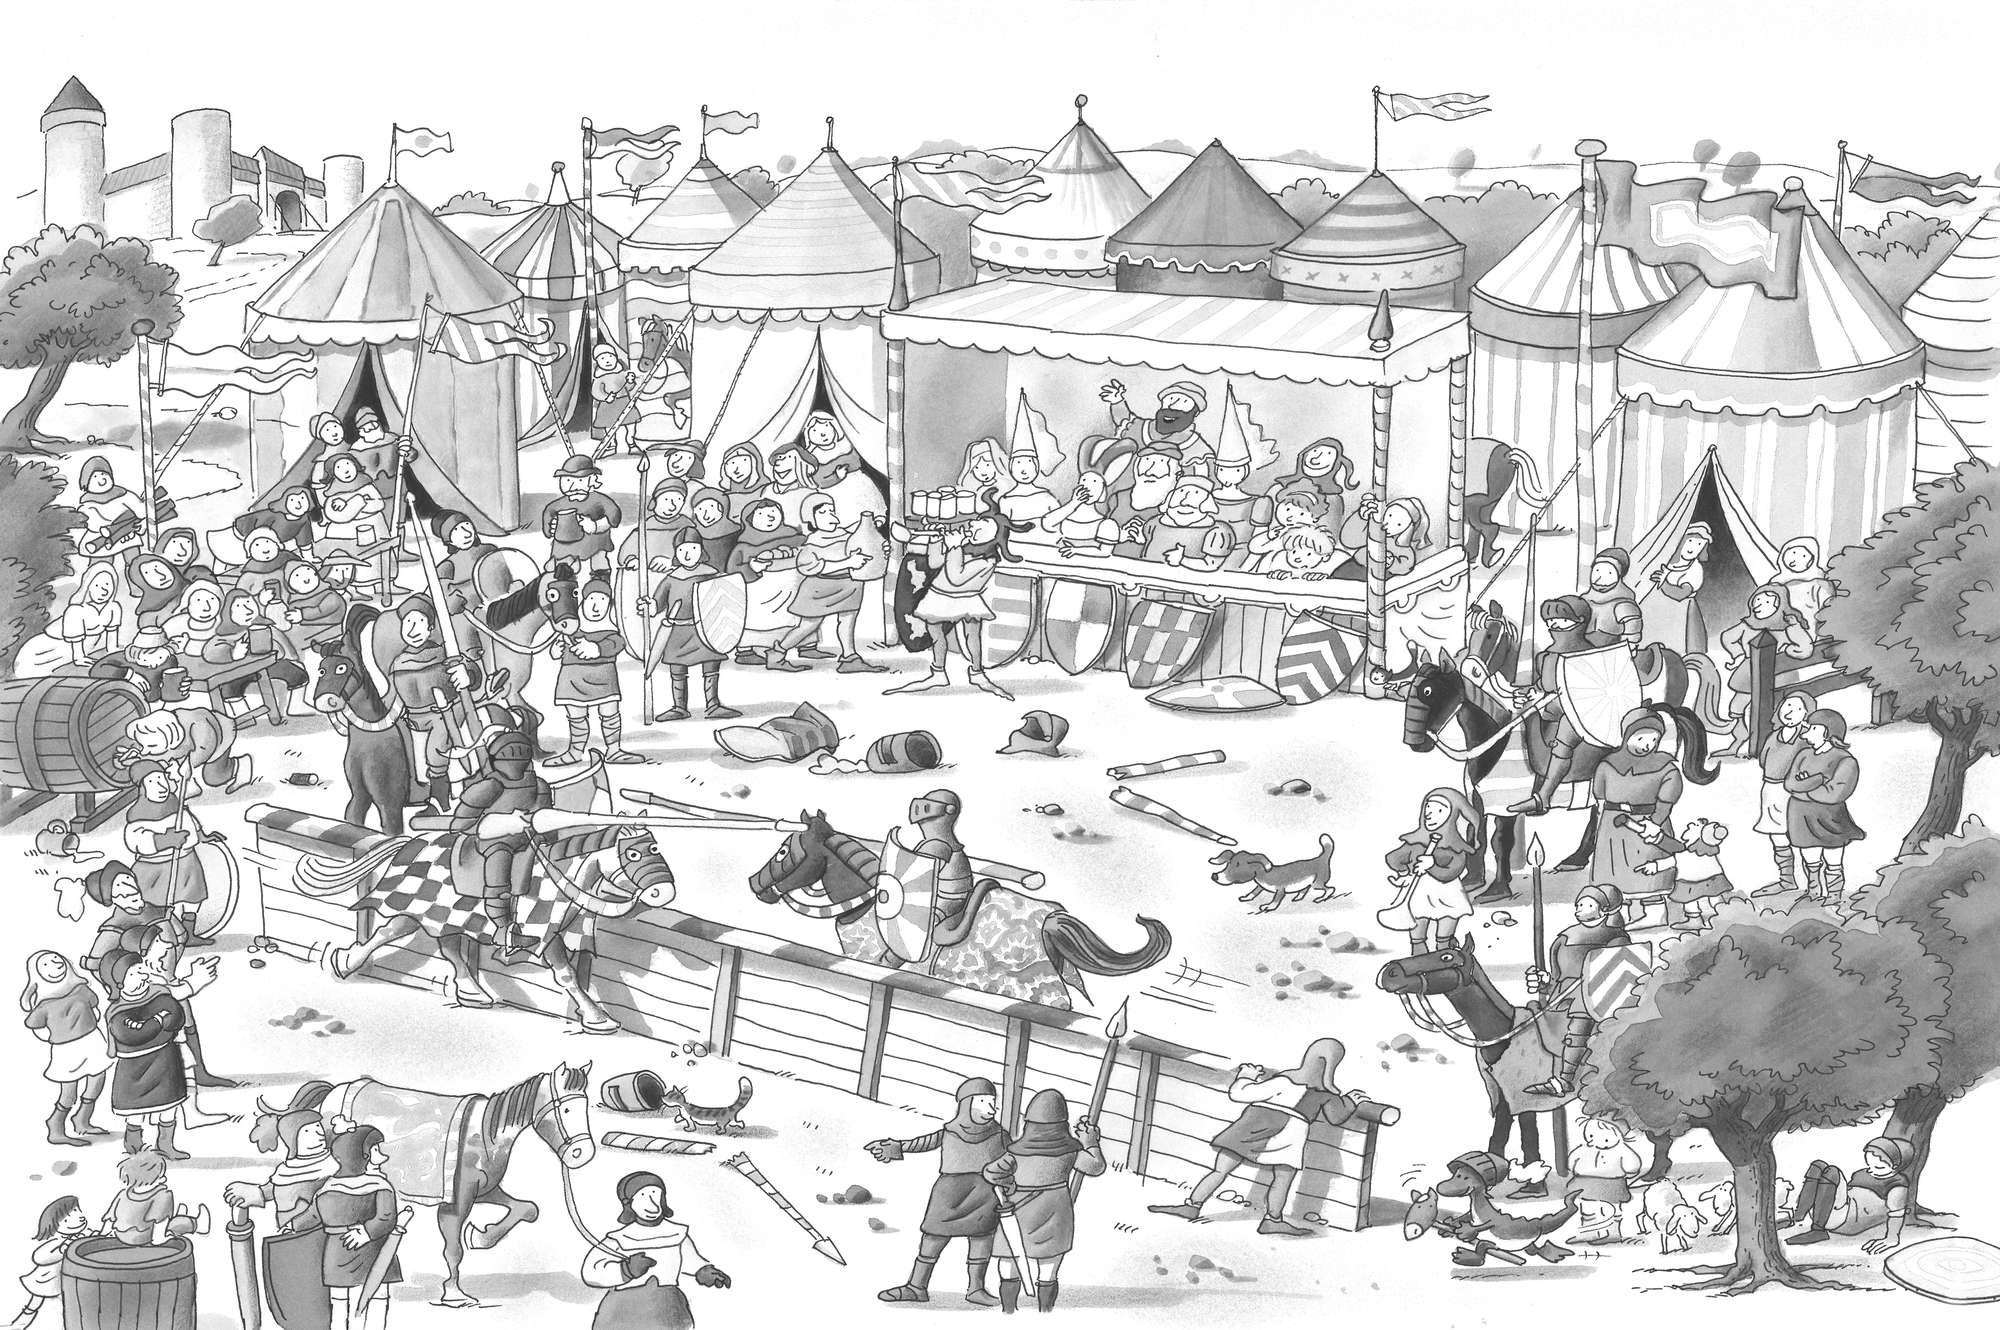             Papier peint panoramique enfants fête des chevaliers avec festival noir blanc sur intissé lisse mat
        